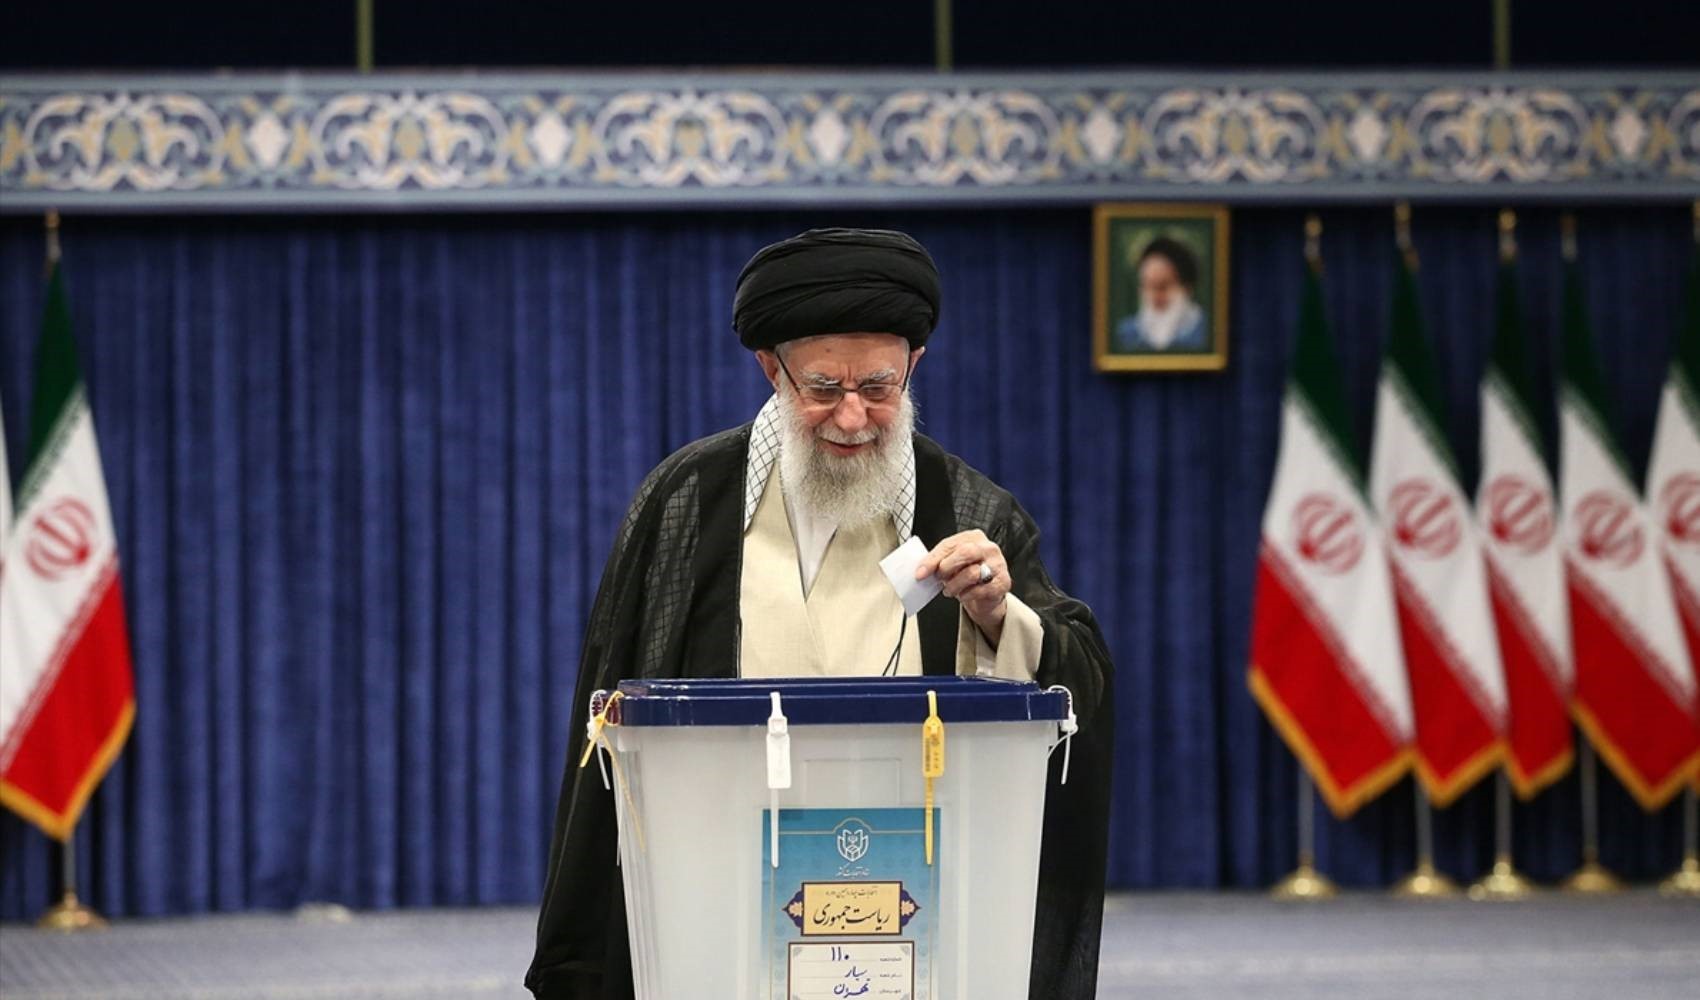 İran’da tarihi bir dönem: Cumhurbaşkanlığı seçimi ve olası seneryolar